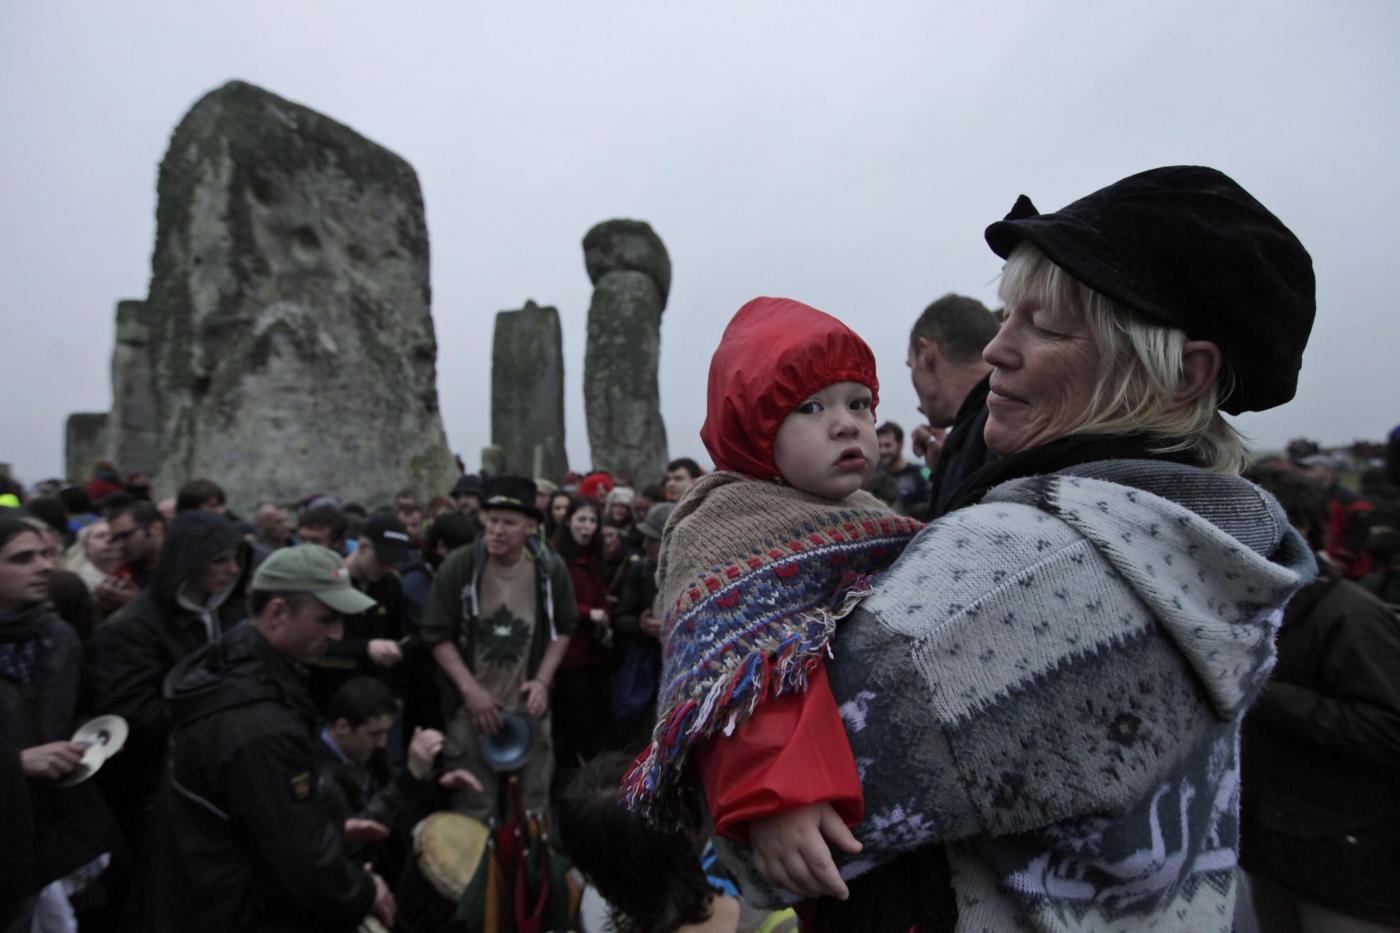 Stonehenge, in migliaia salutano il solstizio d'estate09